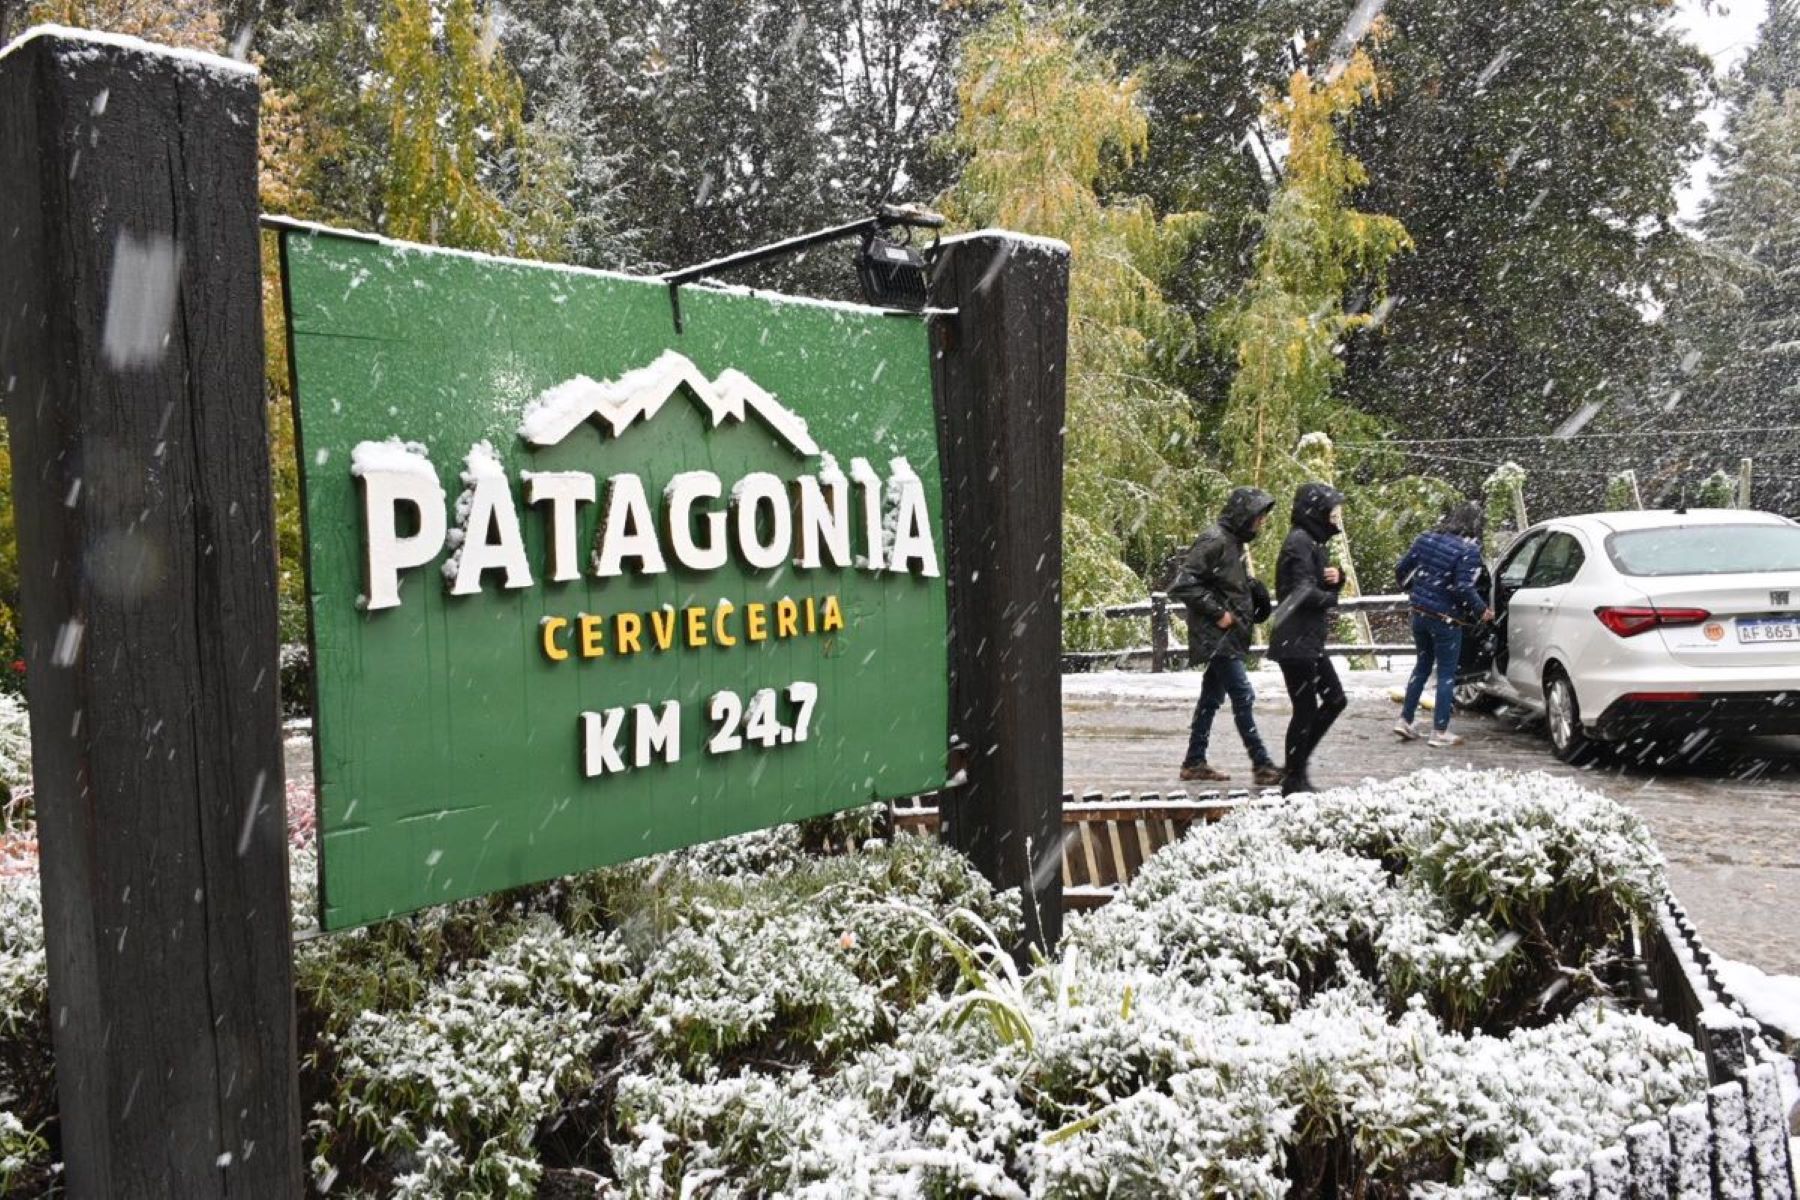 Tras la explosión, permanece cerrada la cervecería Patagonia, en Bariloche. Foto: Chino Leiva